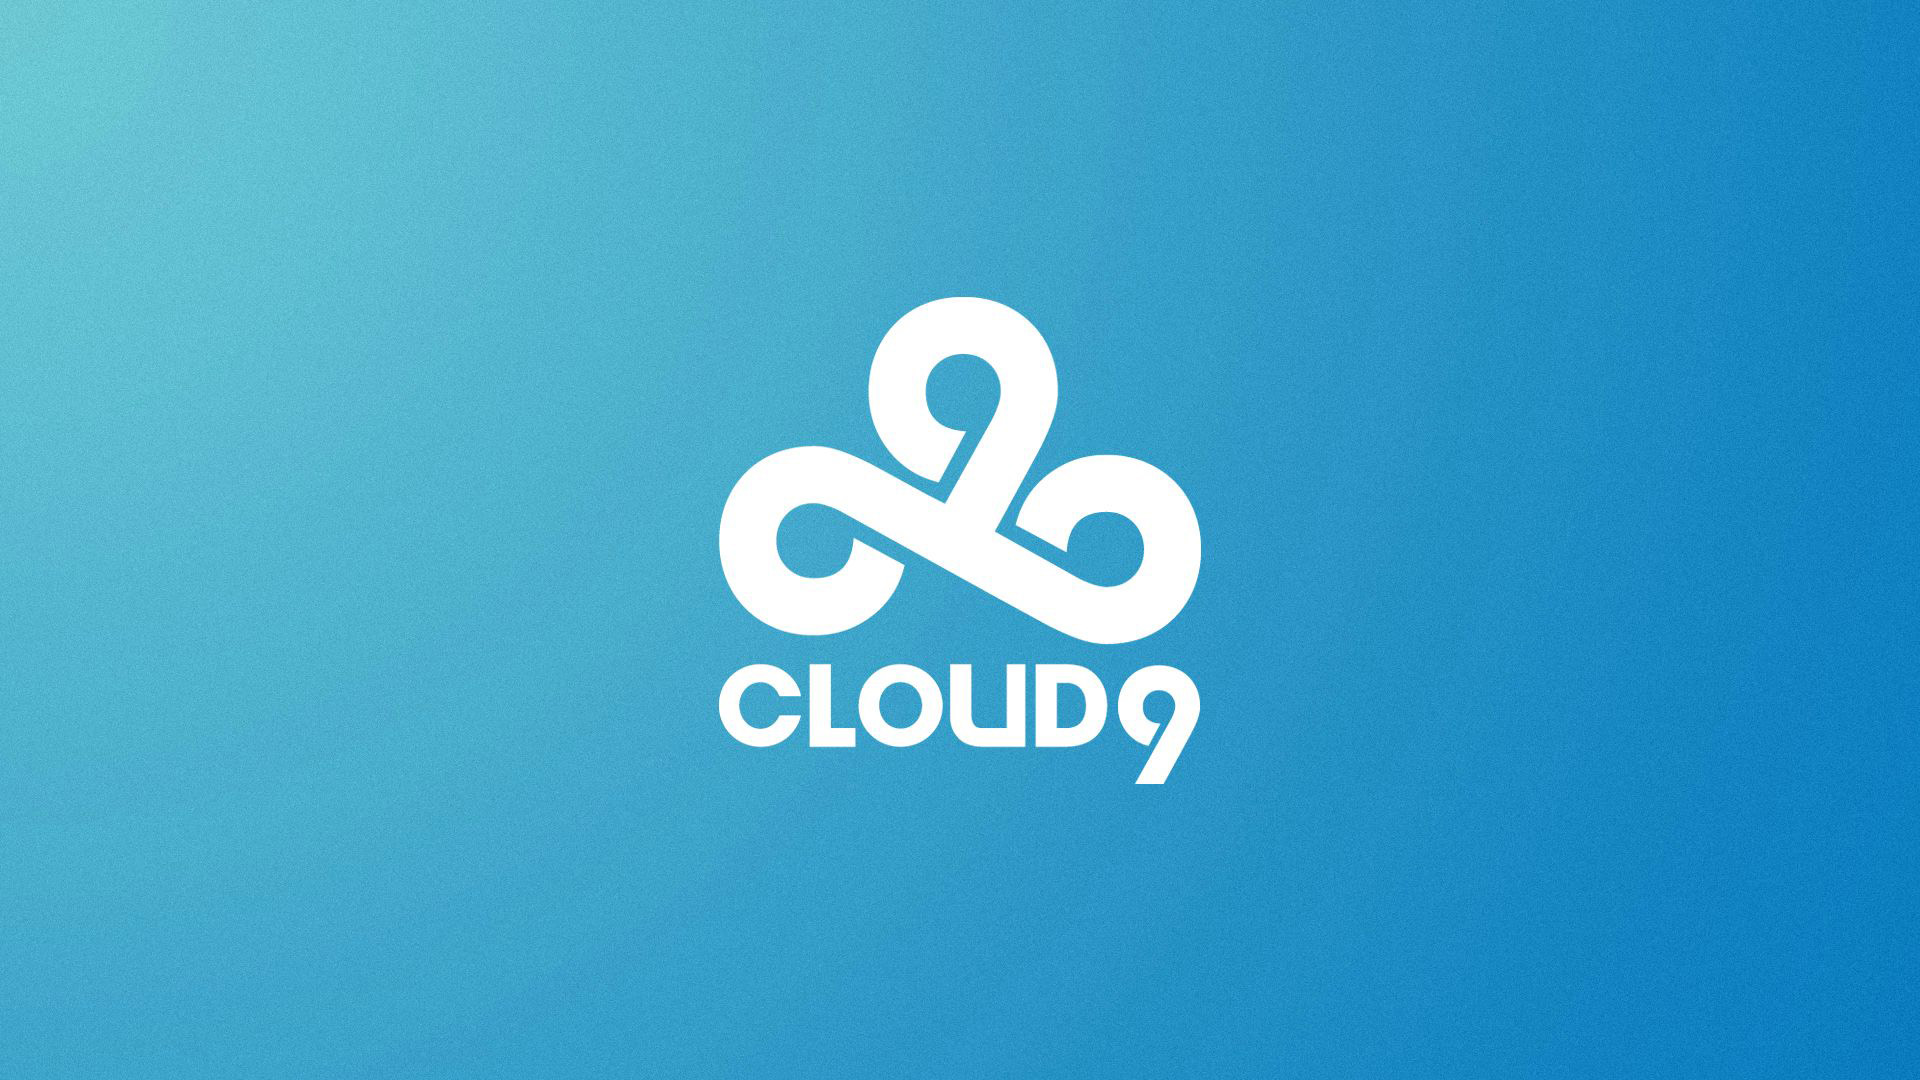 Nafany высказался о поддержке фанатов Cloud9